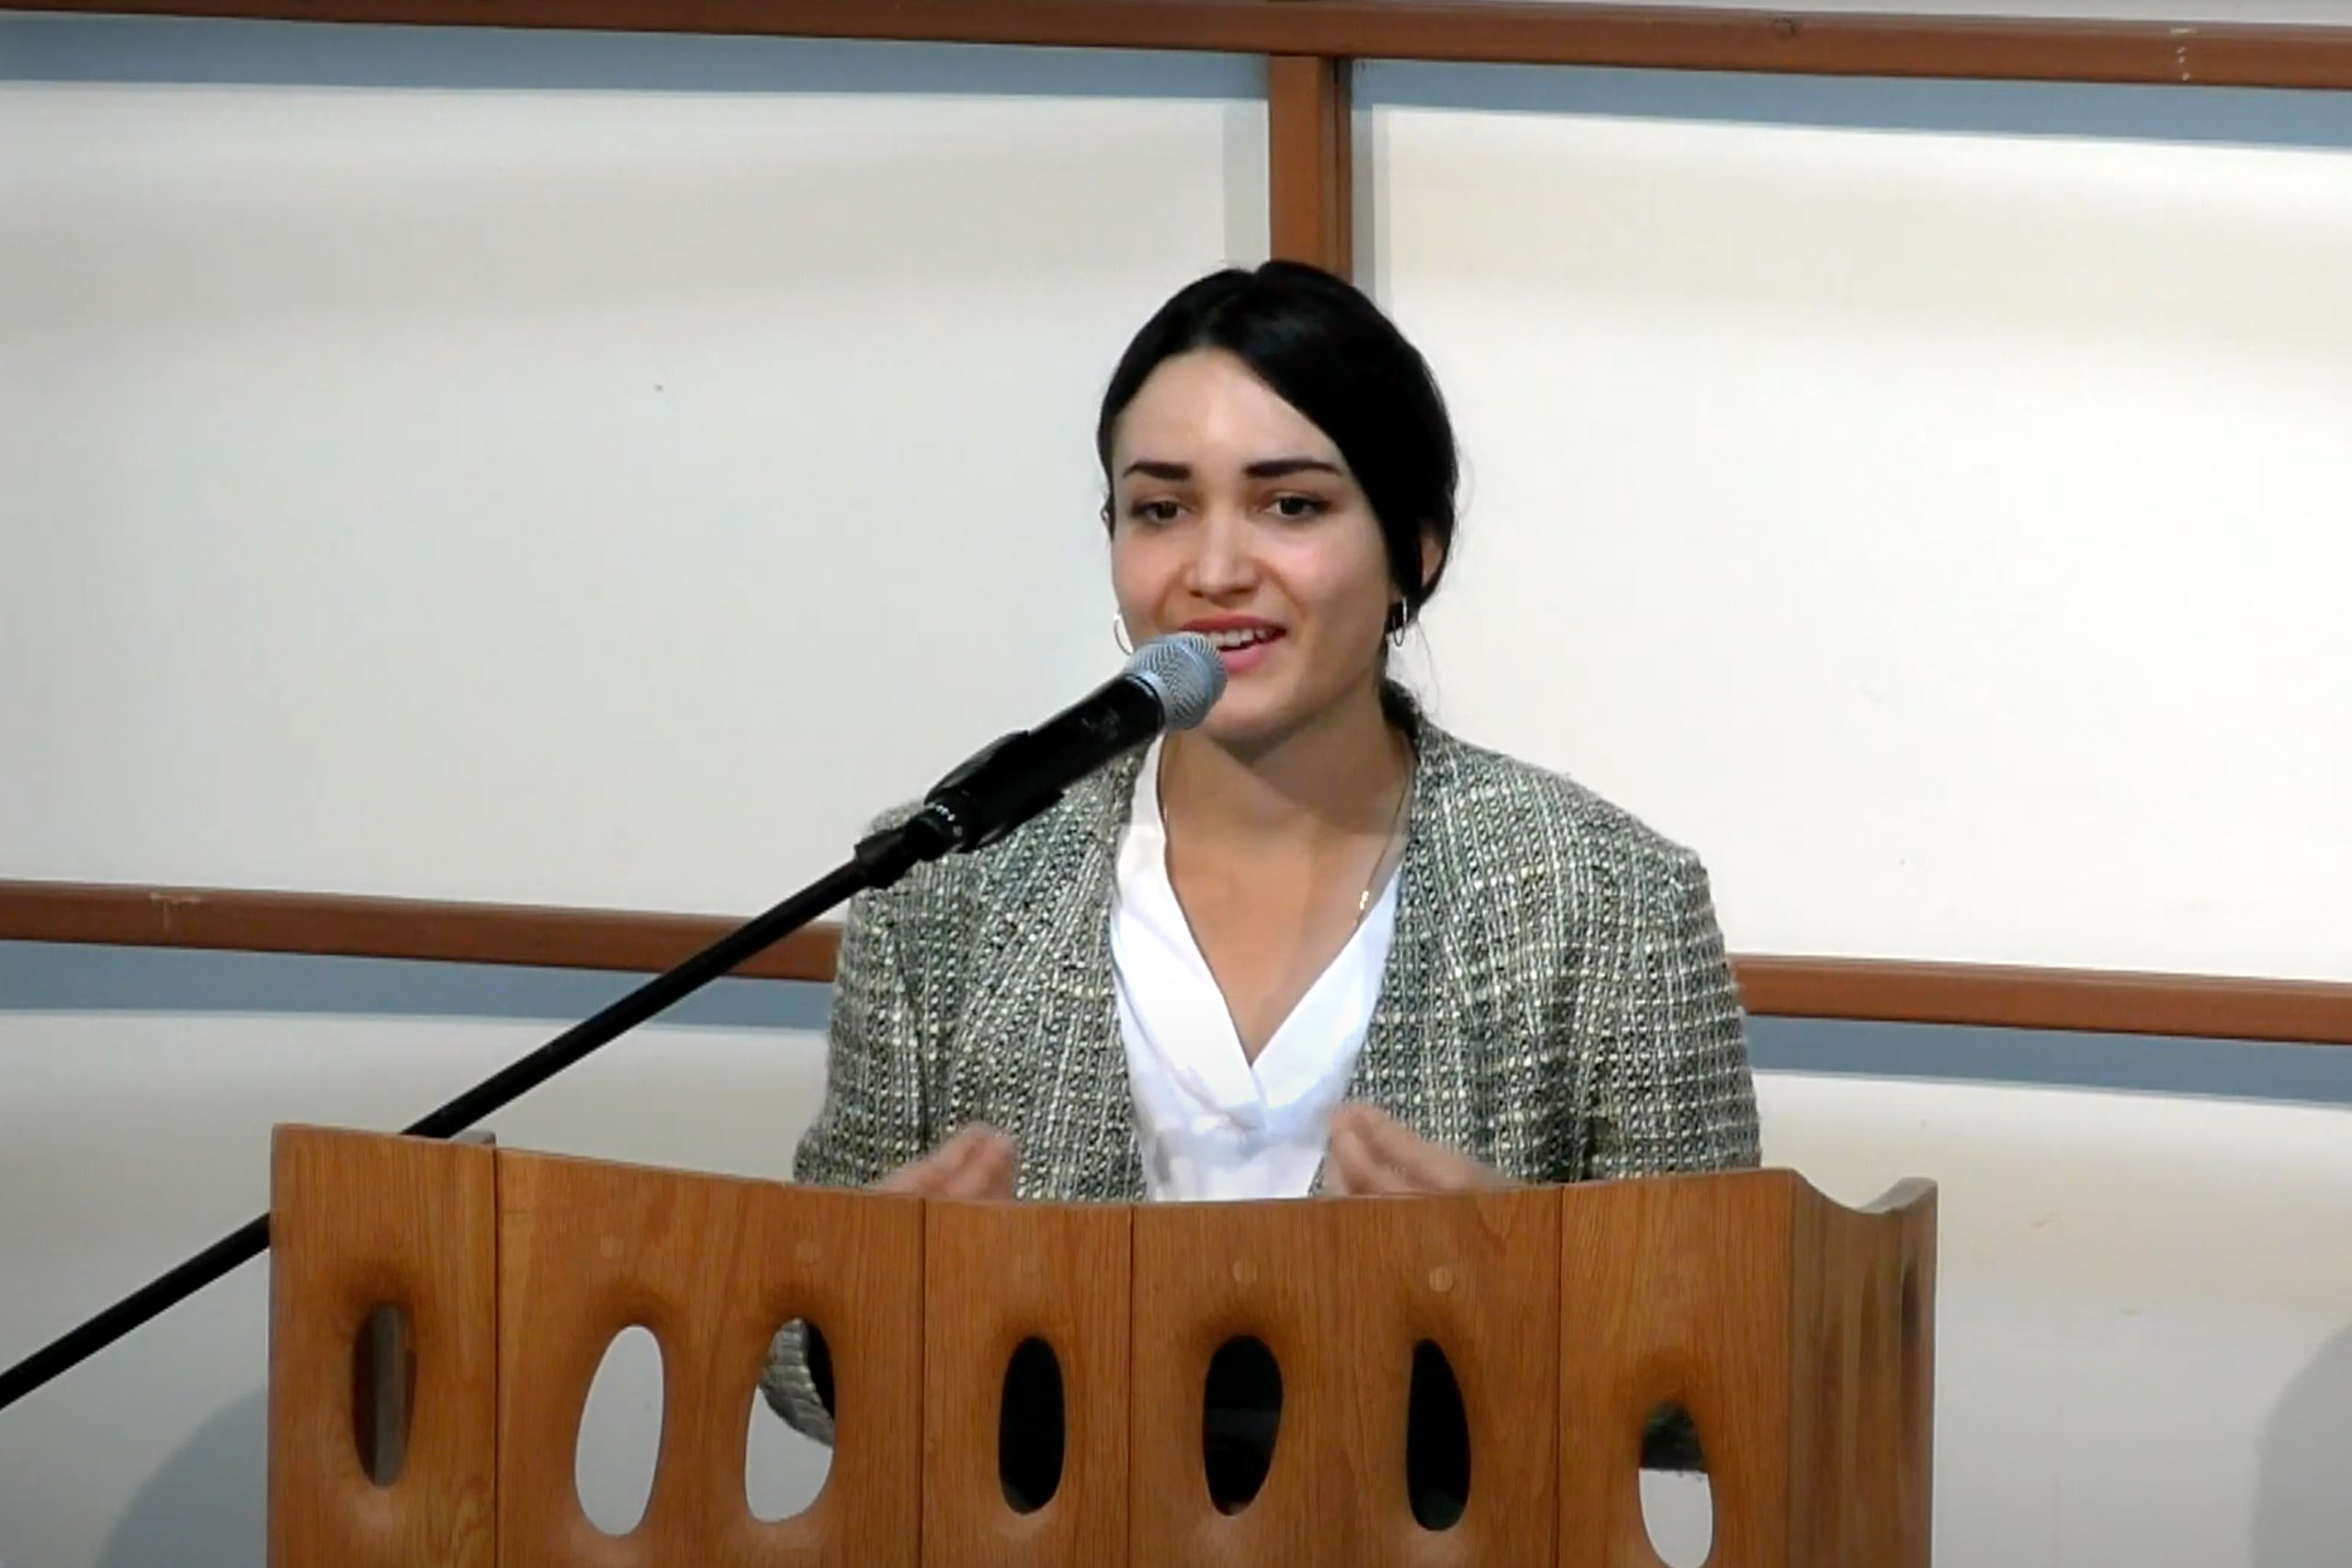 Ilka Vega speaks at podium